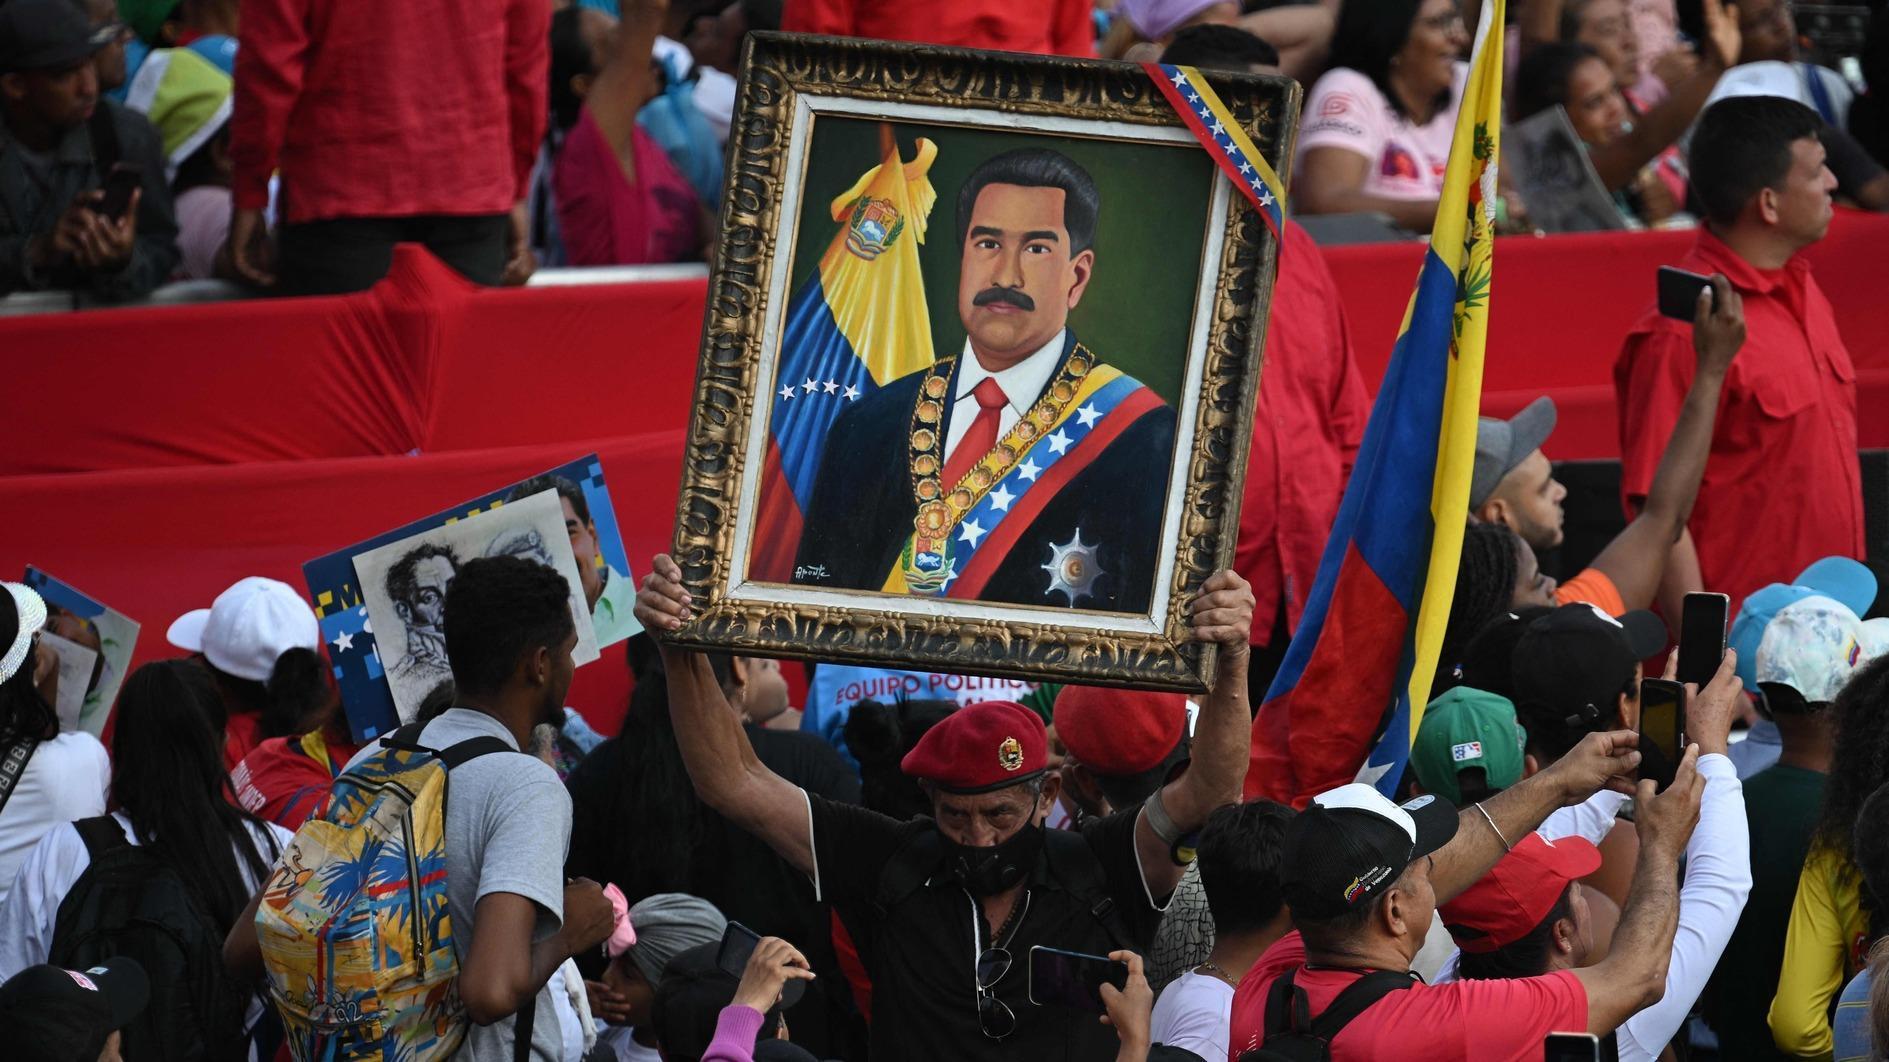 Maduro z Wenezueli zgłasza swoją kandydaturę w wyborach, koalicja opozycji zablokowana